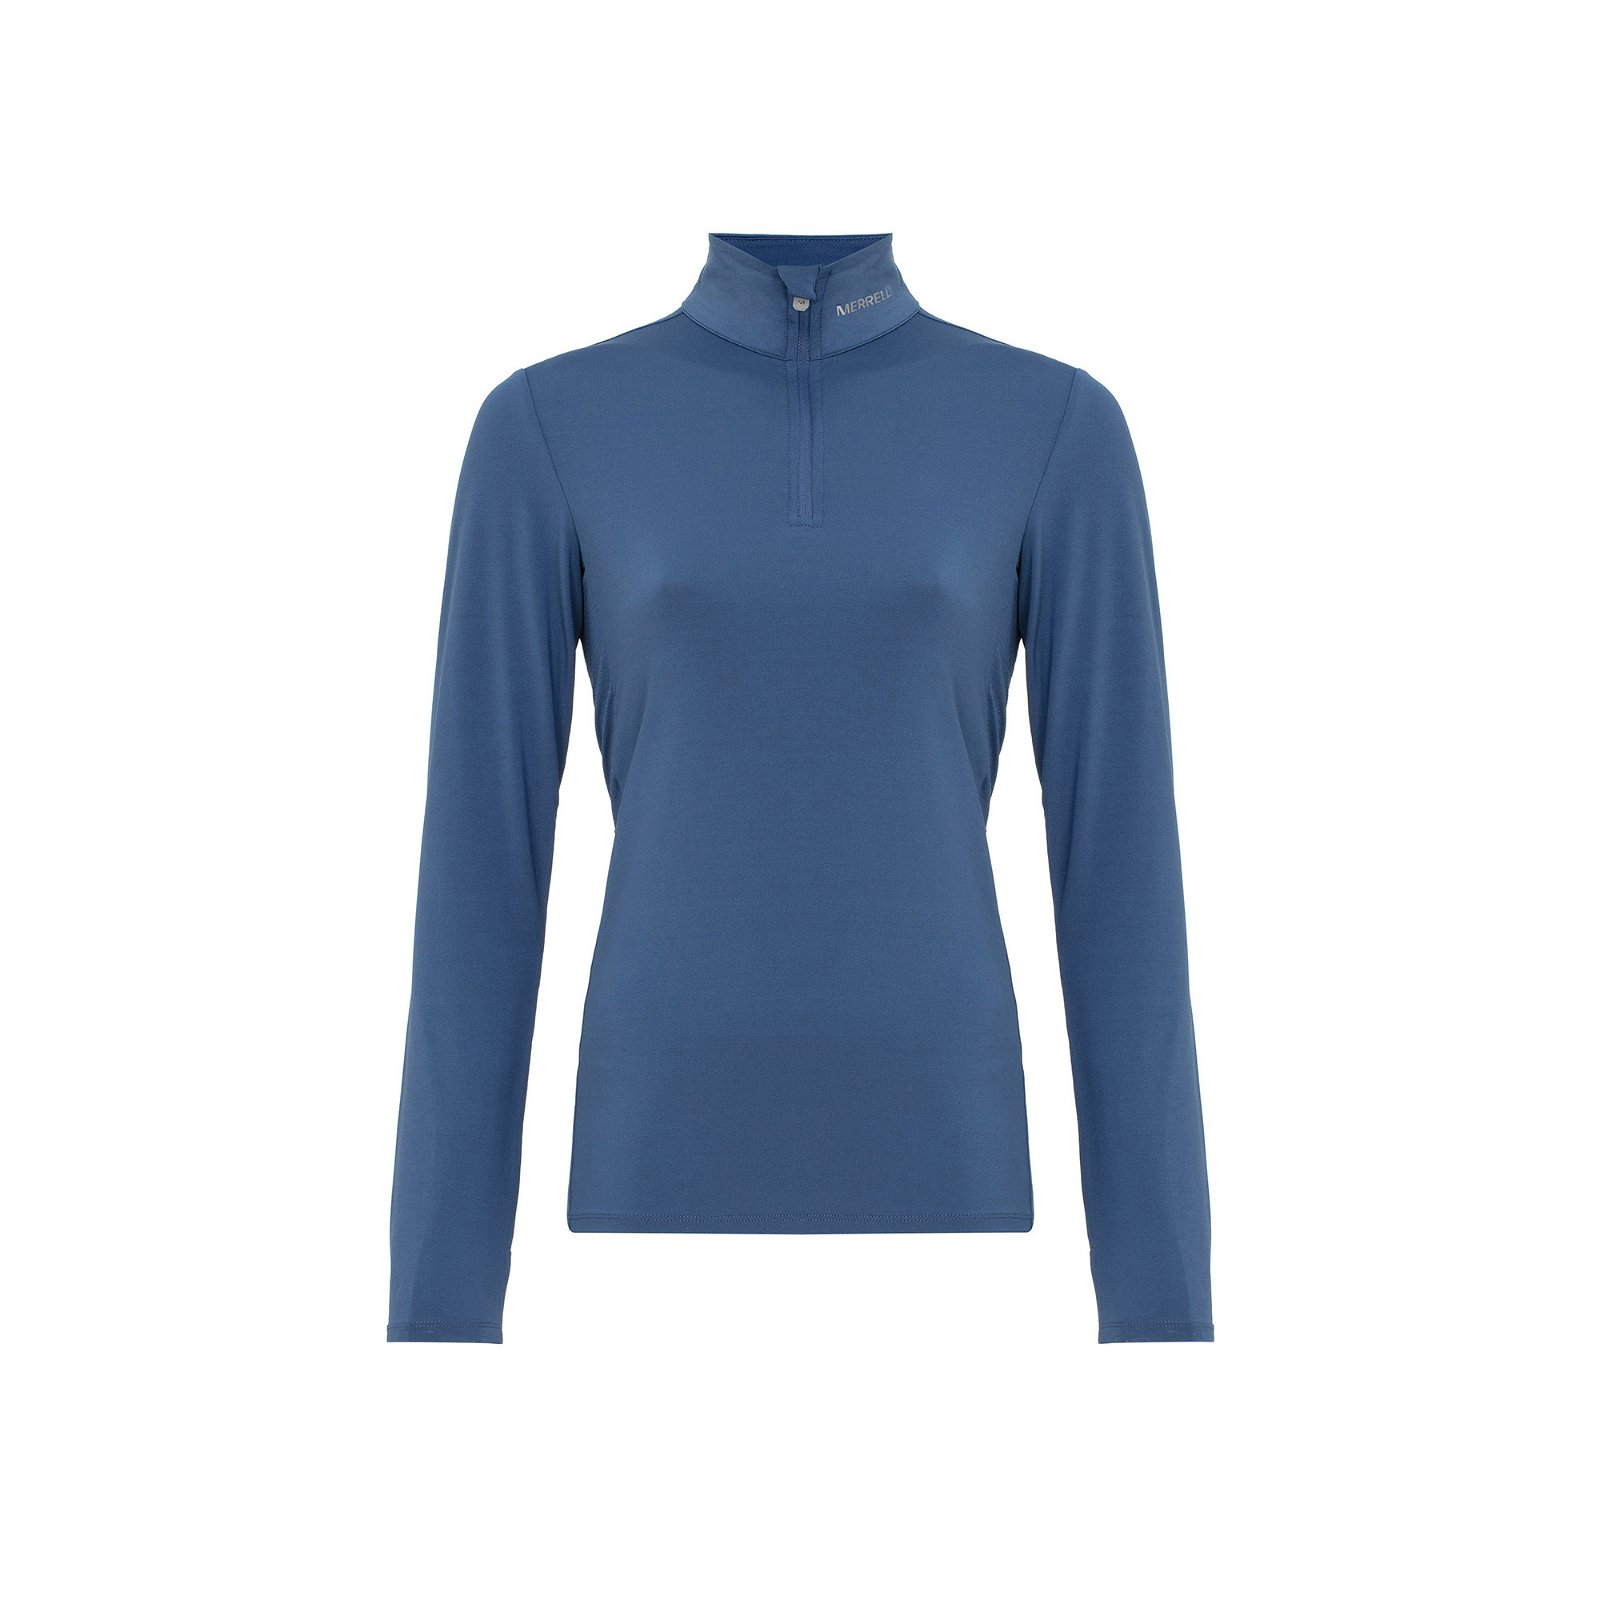 Merrell Tiptop Kadın Tişört - Mavi - 1